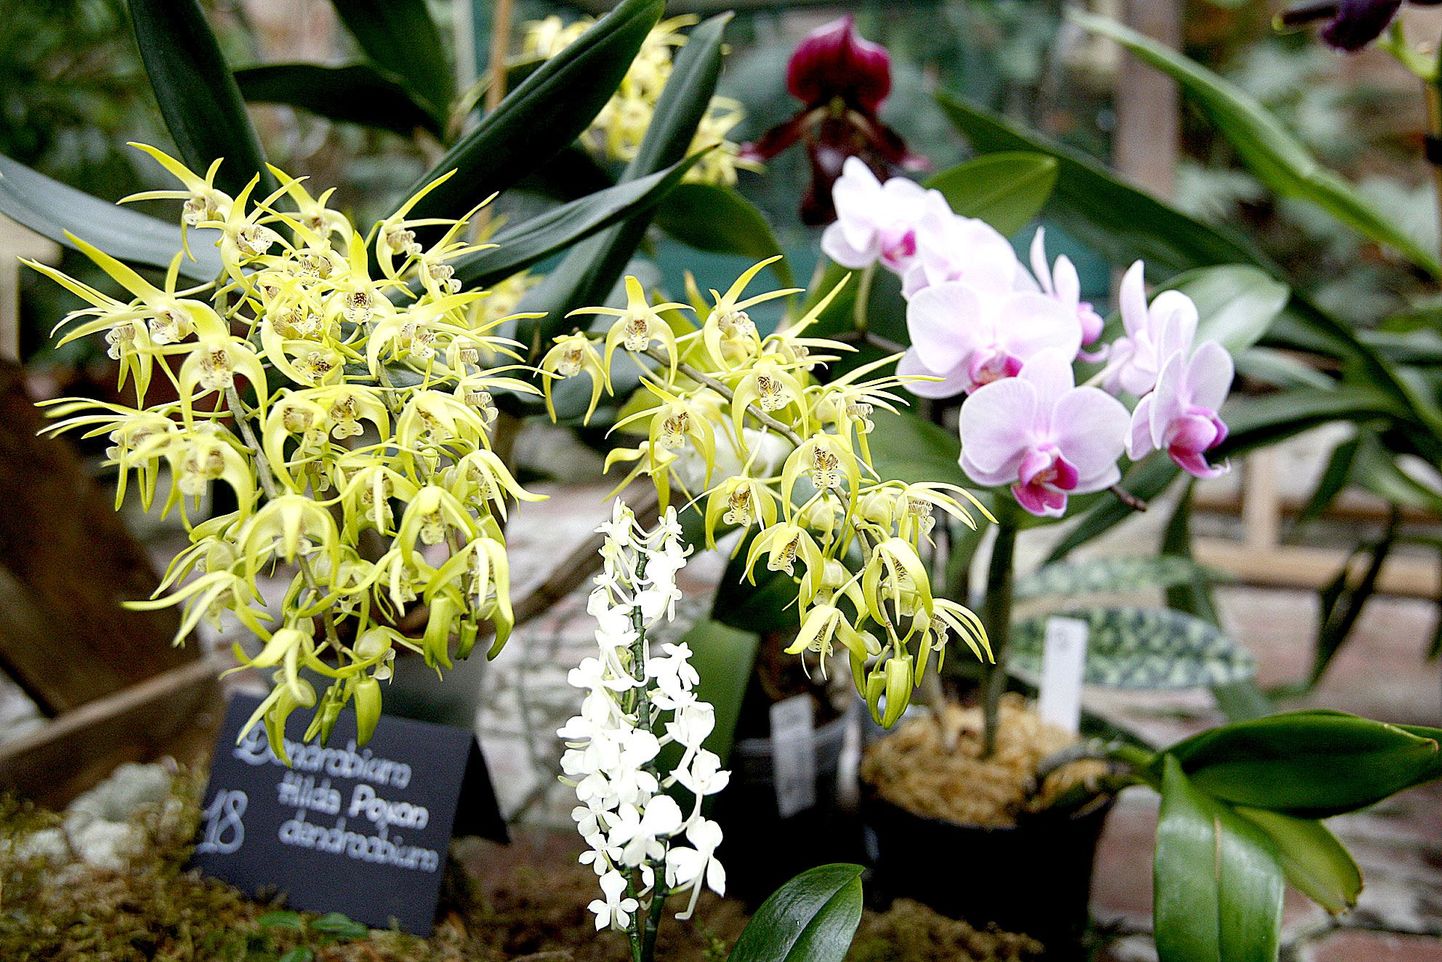 Kõrgem tase, vapustav iludus, kiitis Tartu Ülikooli botaanikaaia aednik Sten Mander pildil poosetavaid erakollektsionääride orhideesid.